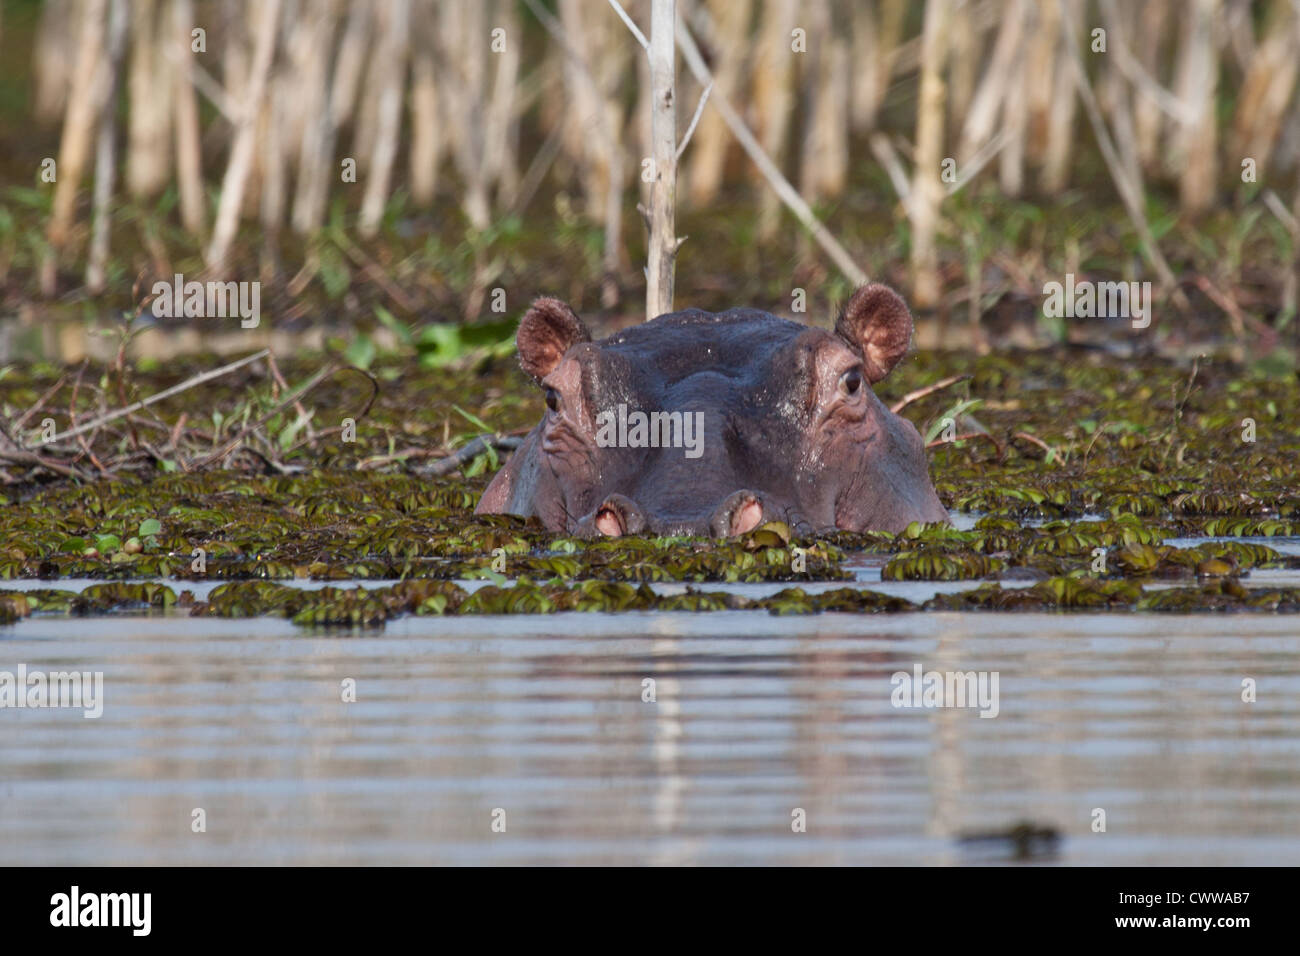 Hippopotamus in Lake Niavasha, Kenya Stock Photo